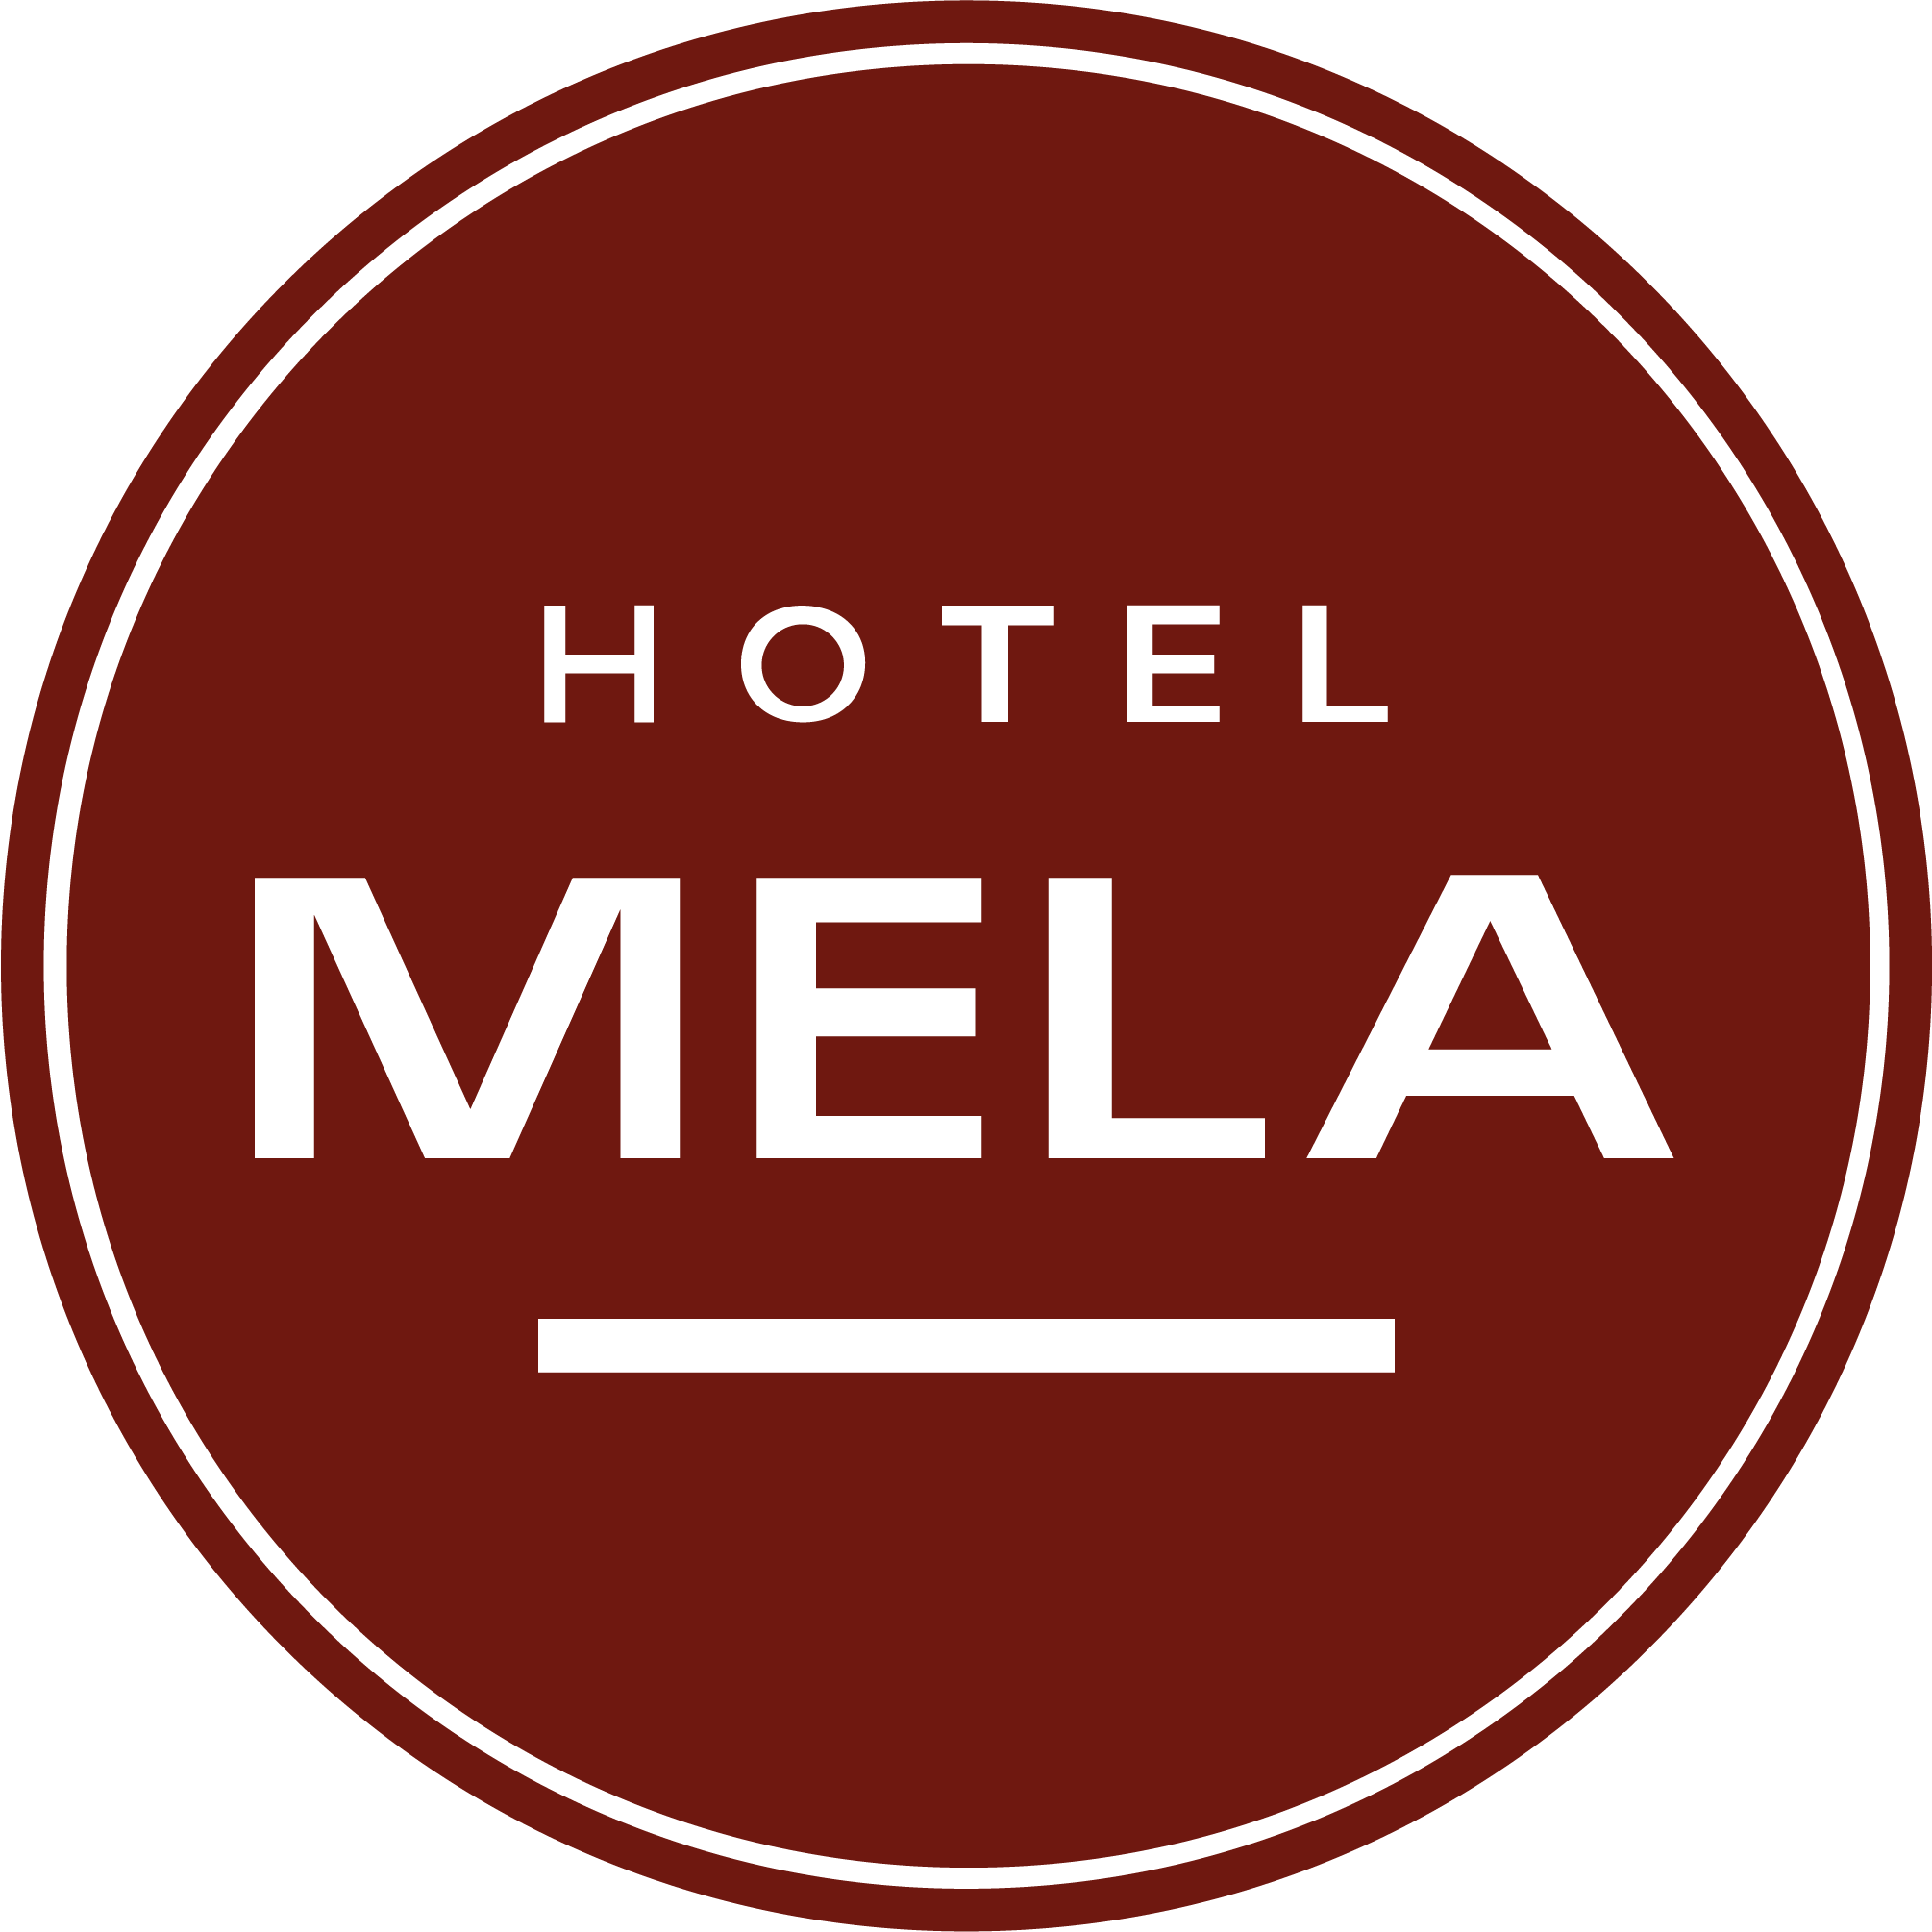 Hotel Mela Times Square - New York, NY 10036 - (212)710-7000 | ShowMeLocal.com